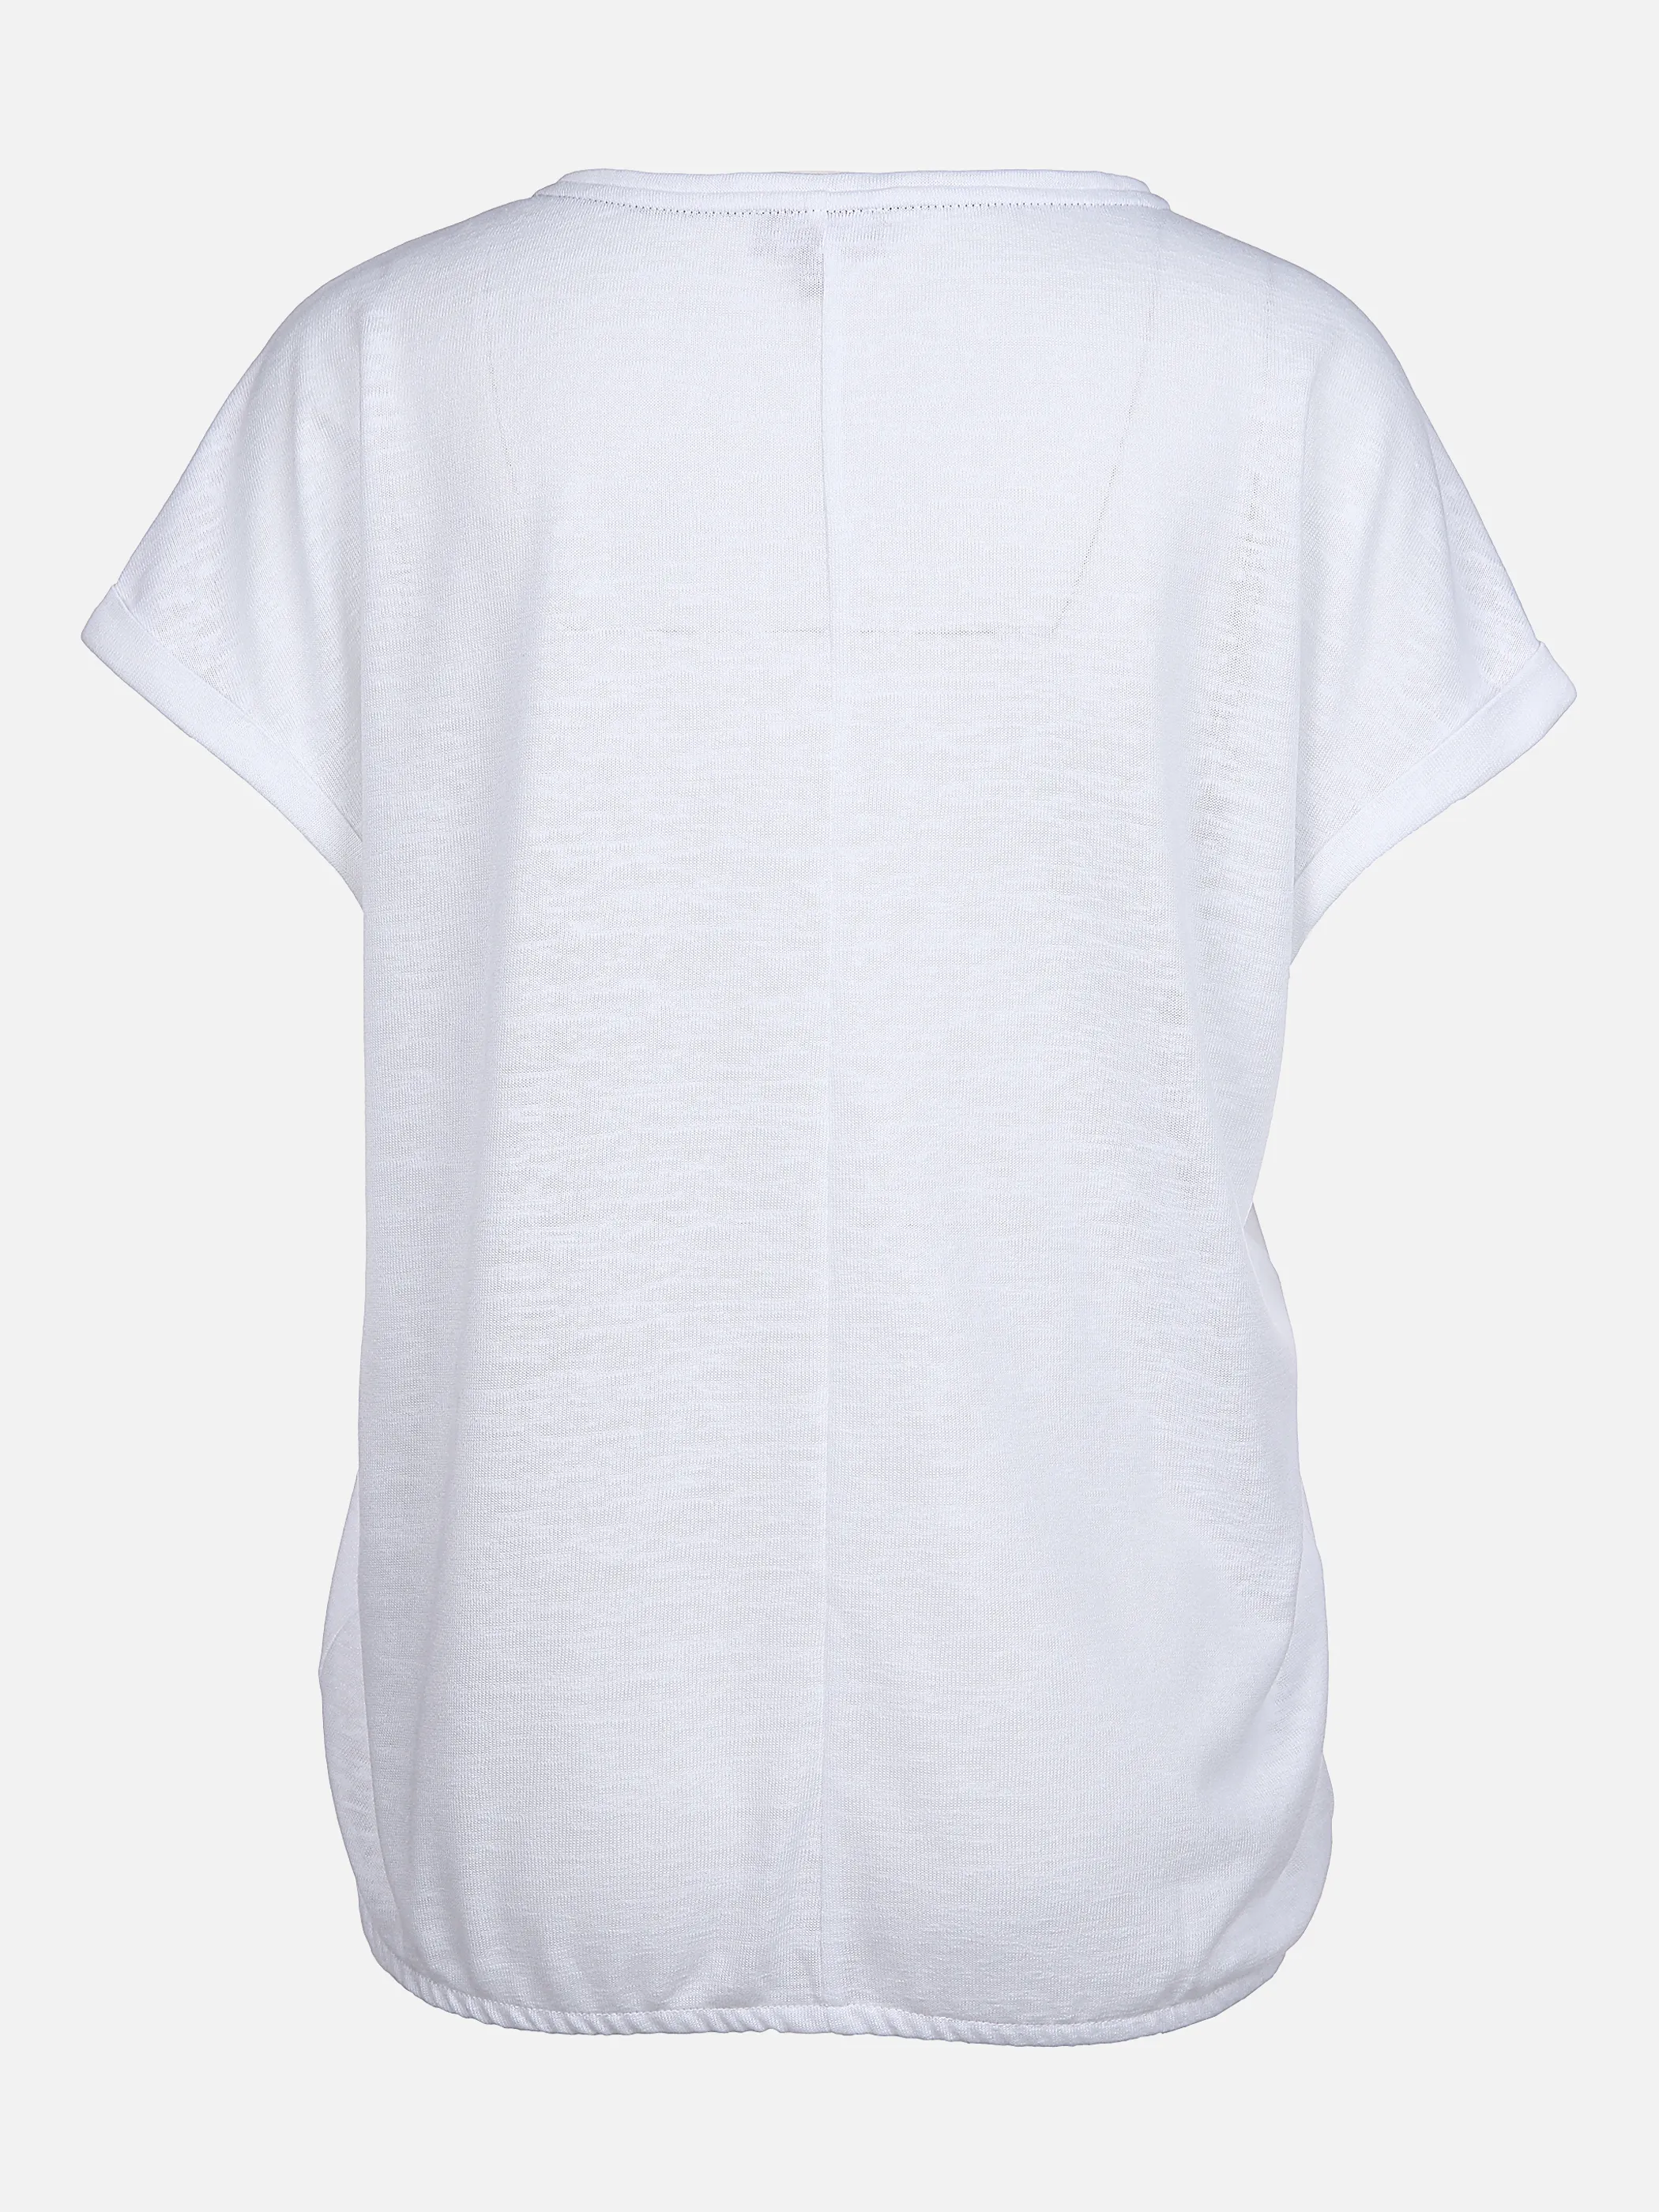 Sure Da-T-Shirt uni/mit Frontprint Weiß 864791 WEIß 2